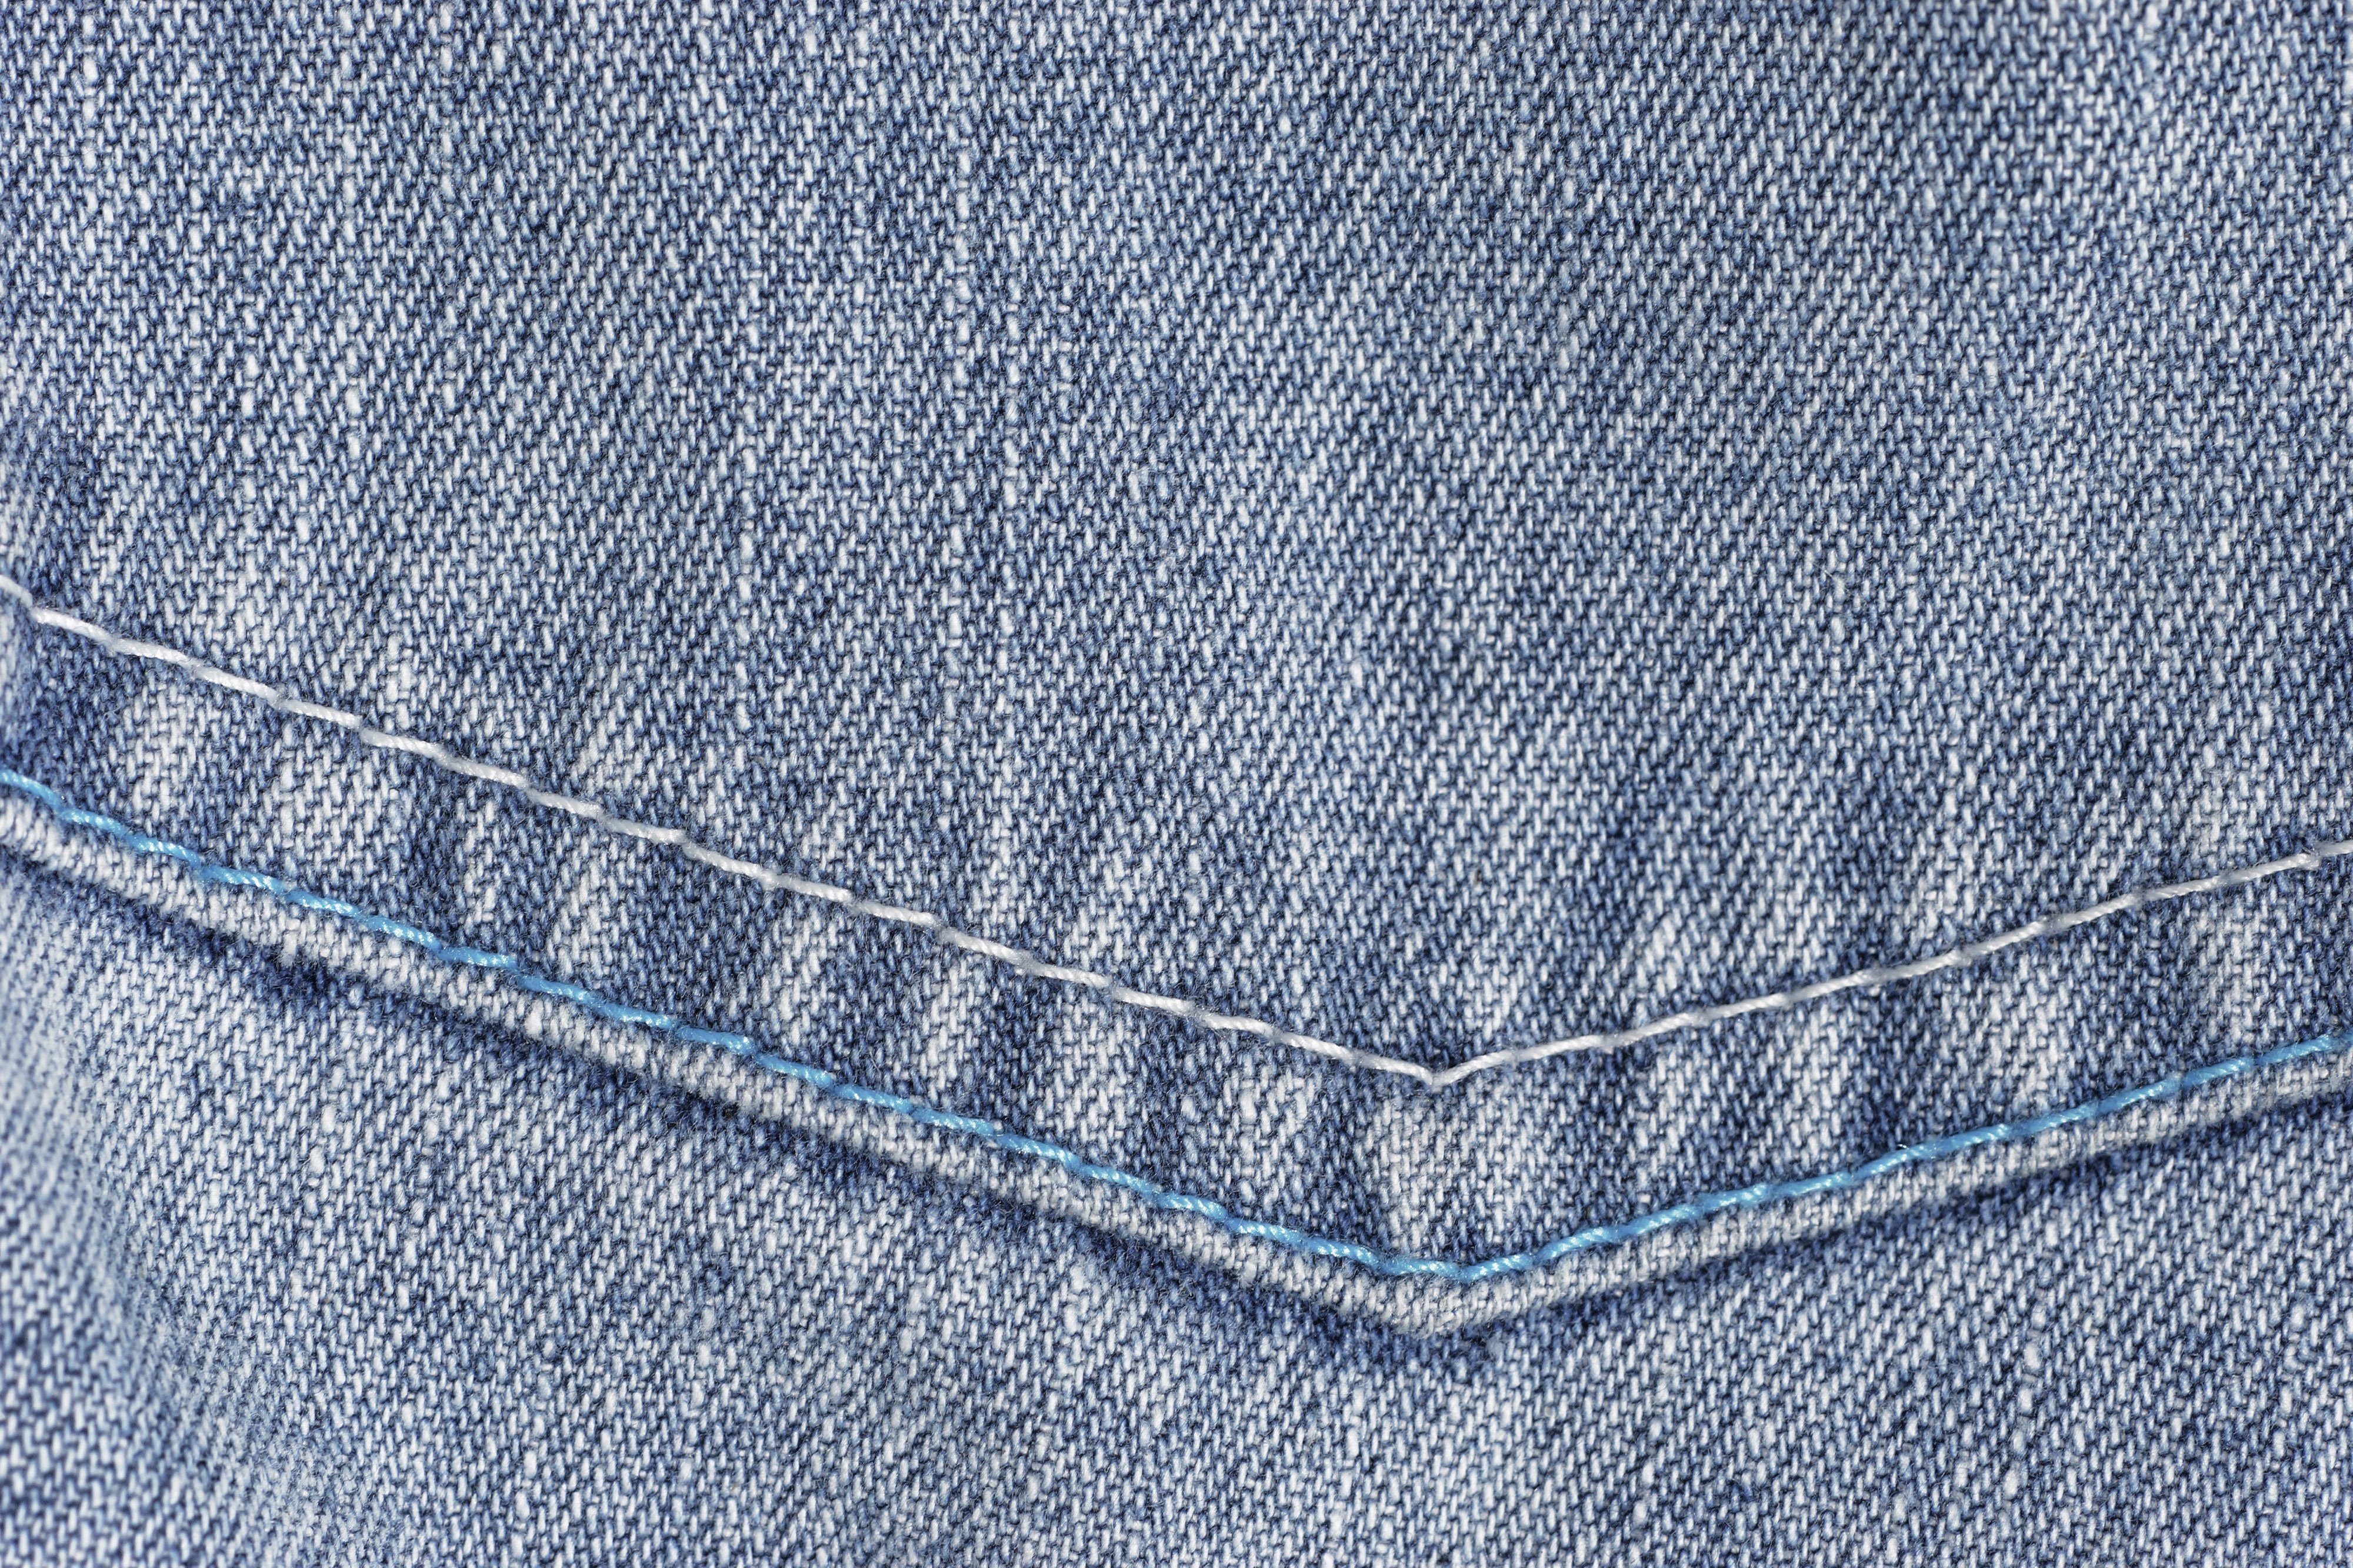 Текстура джинсов. Джинсовая ткань. Материал джинс. Фактура джинсы. Текстура джинсовой ткани.